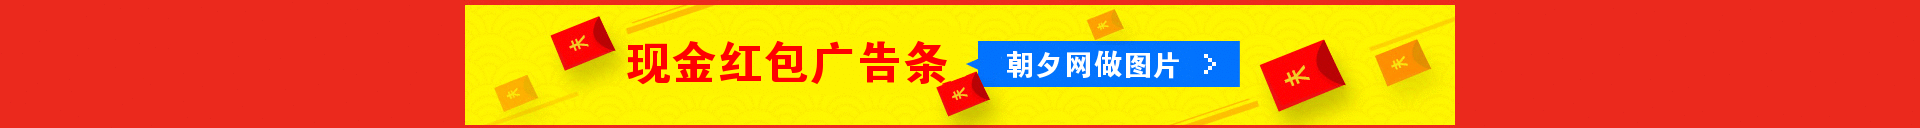 人民币符号现金红包banner在线制作 演示效果